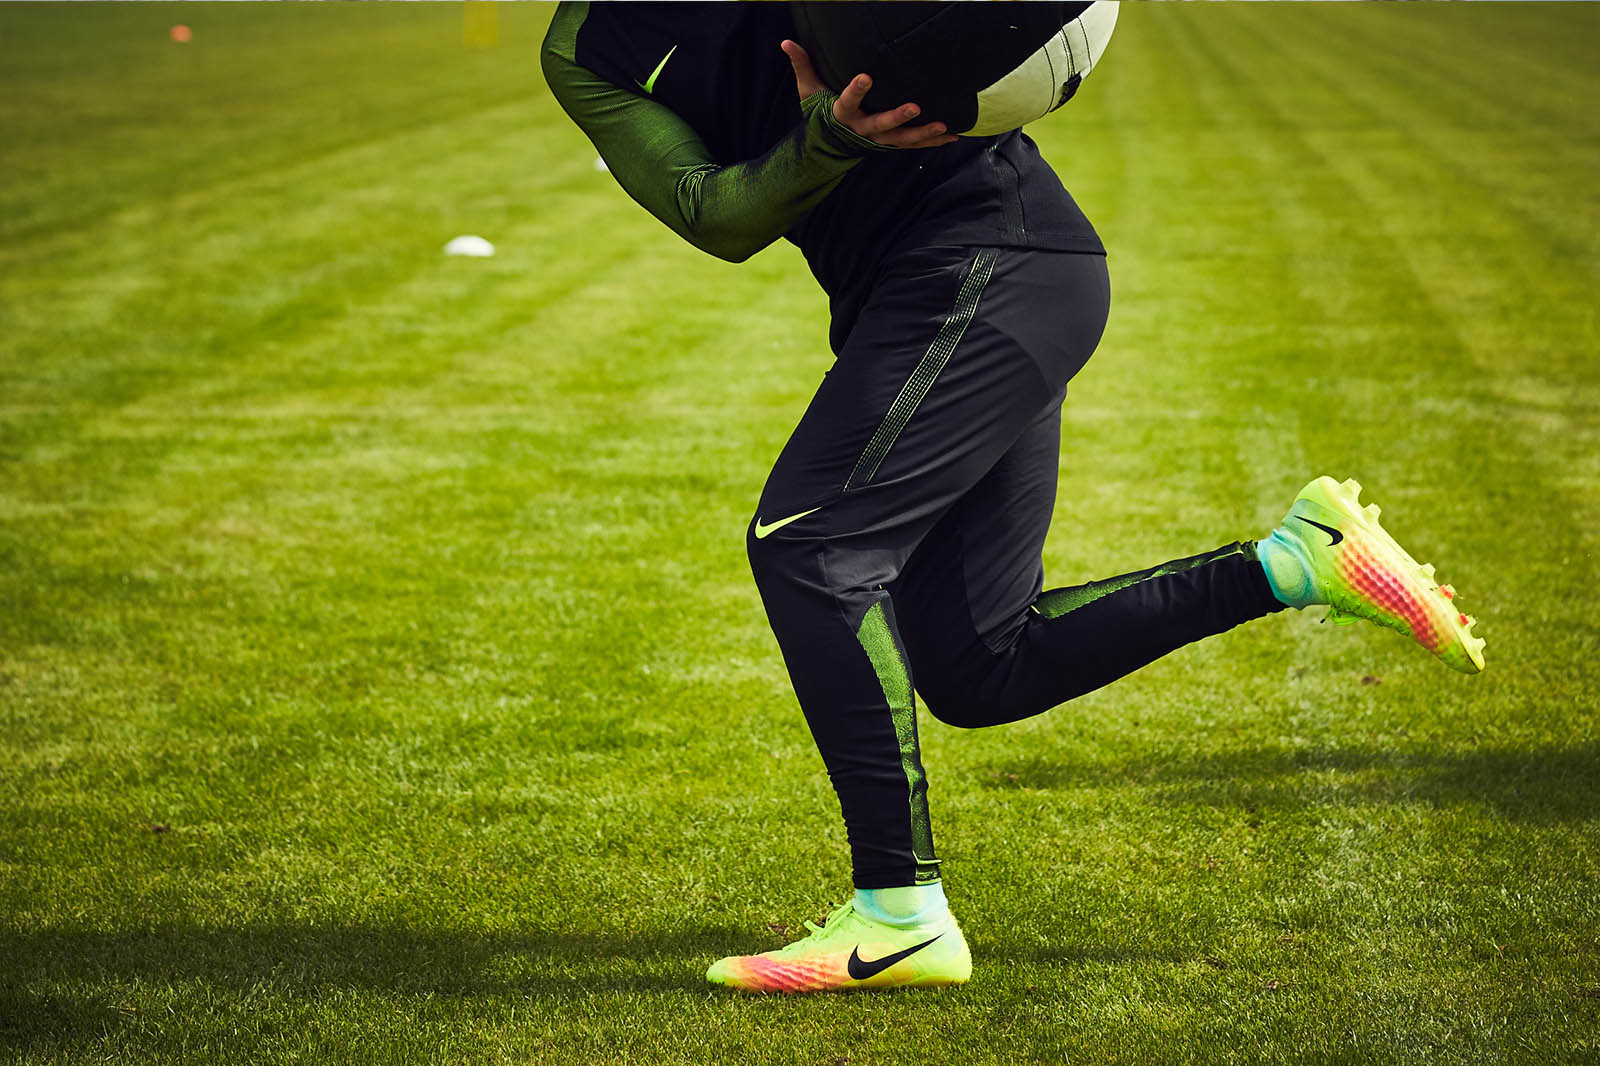 Schots Nieuwjaar bord Next-Gen Nike Magista Obra II 2016-17 Boots Released - Footy Headlines